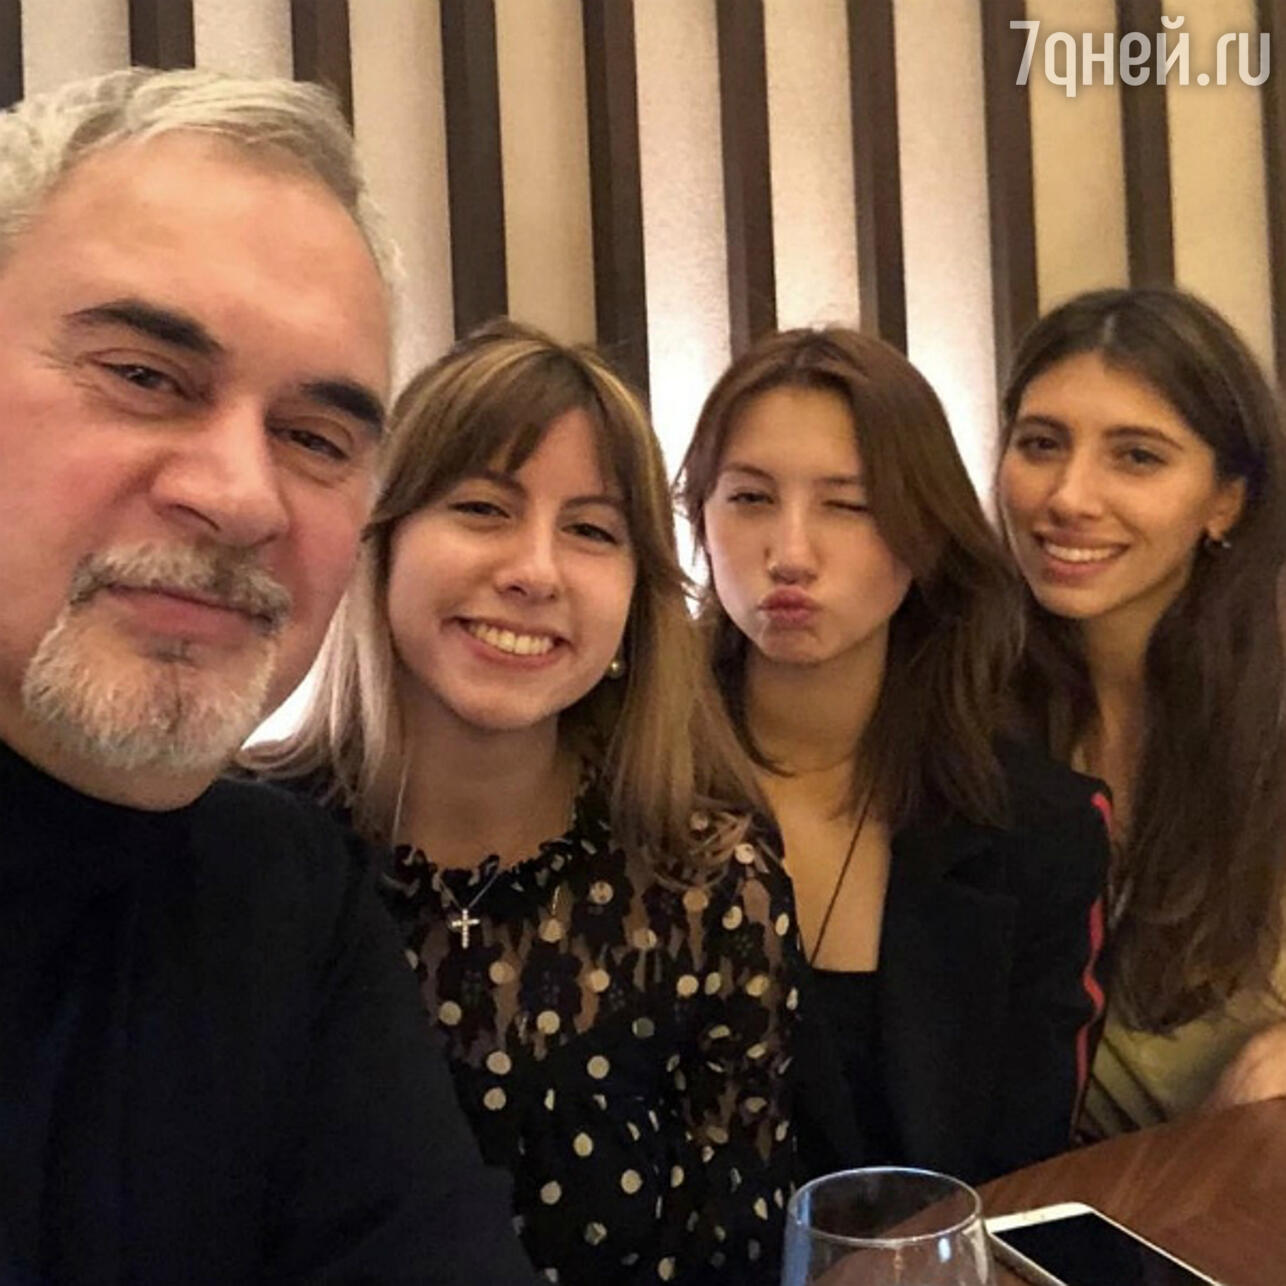 Валерий Меладзе поздравил Альбину Джанабаеву с днем рождения и опубликовал семейное фото с детьми